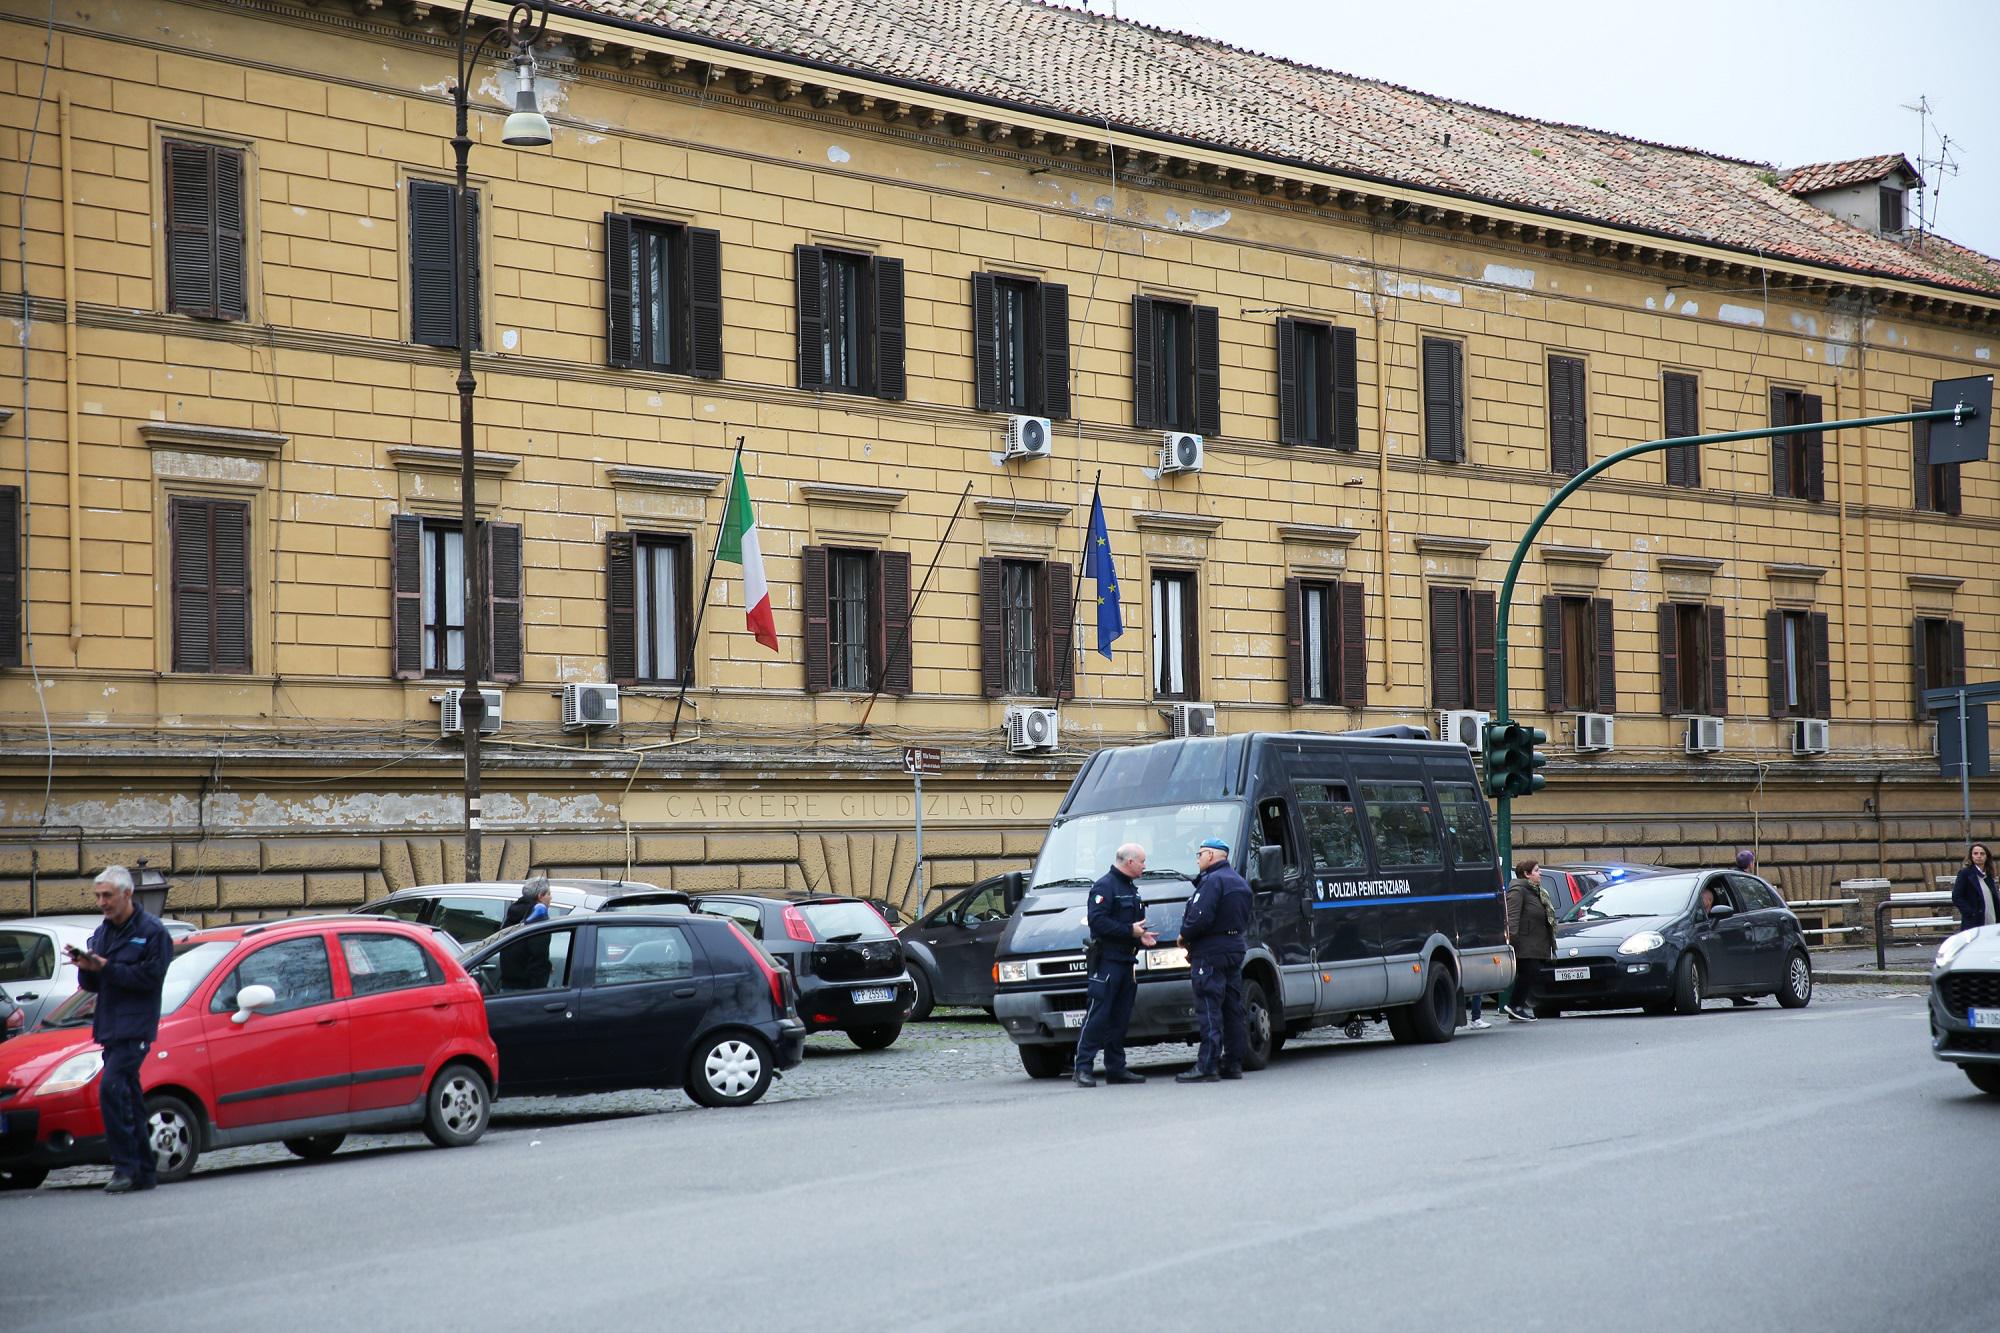 Dolci alla bimba vicina di casa - poi le molestie: arrestato 40enne a Roma